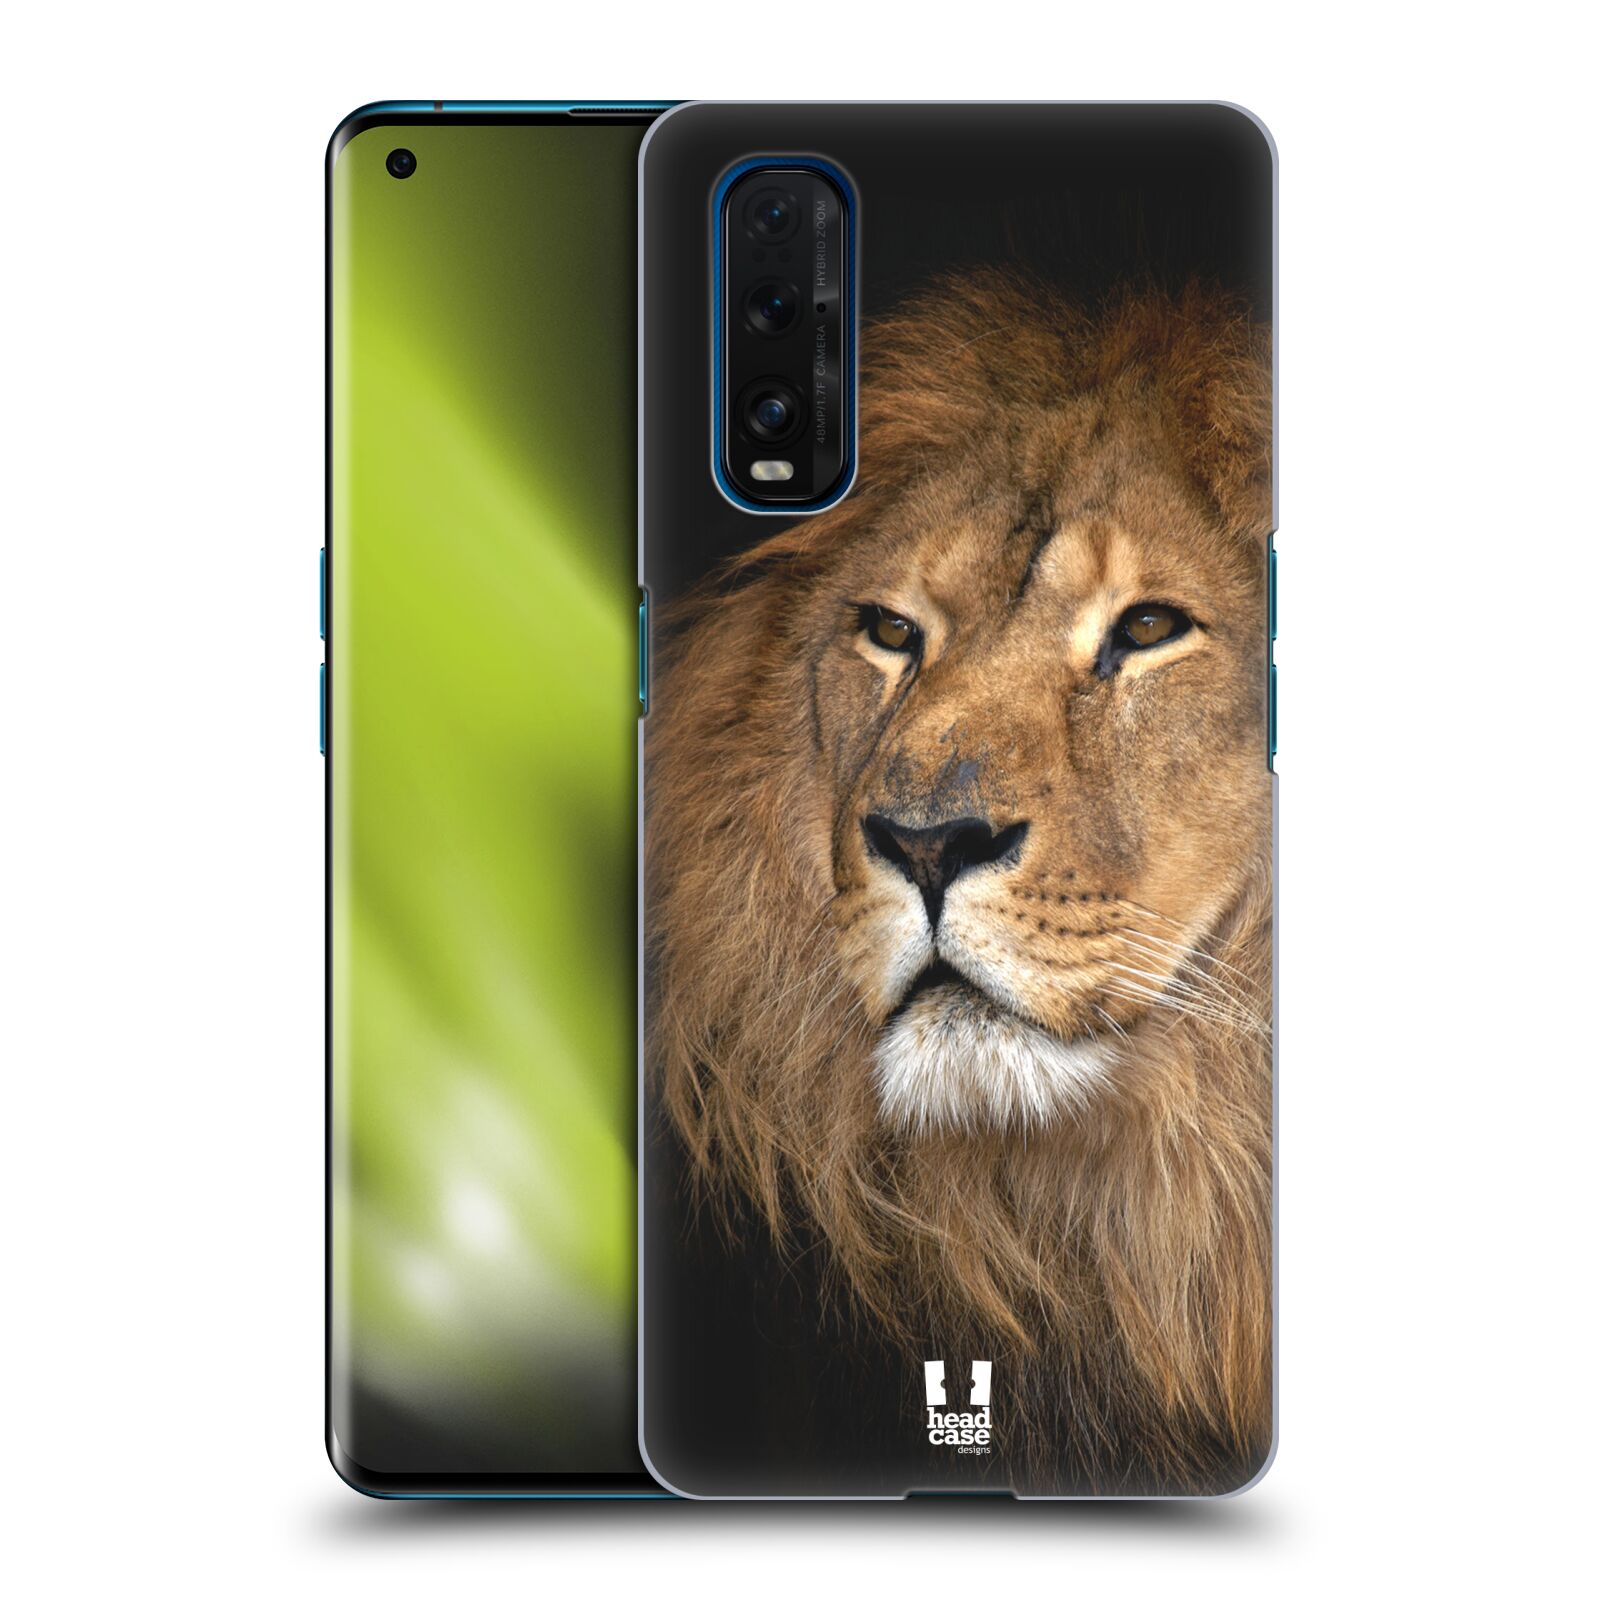 Zadní obal pro mobil Oppo Find X2 - HEAD CASE - Svět zvířat král zvířat Lev